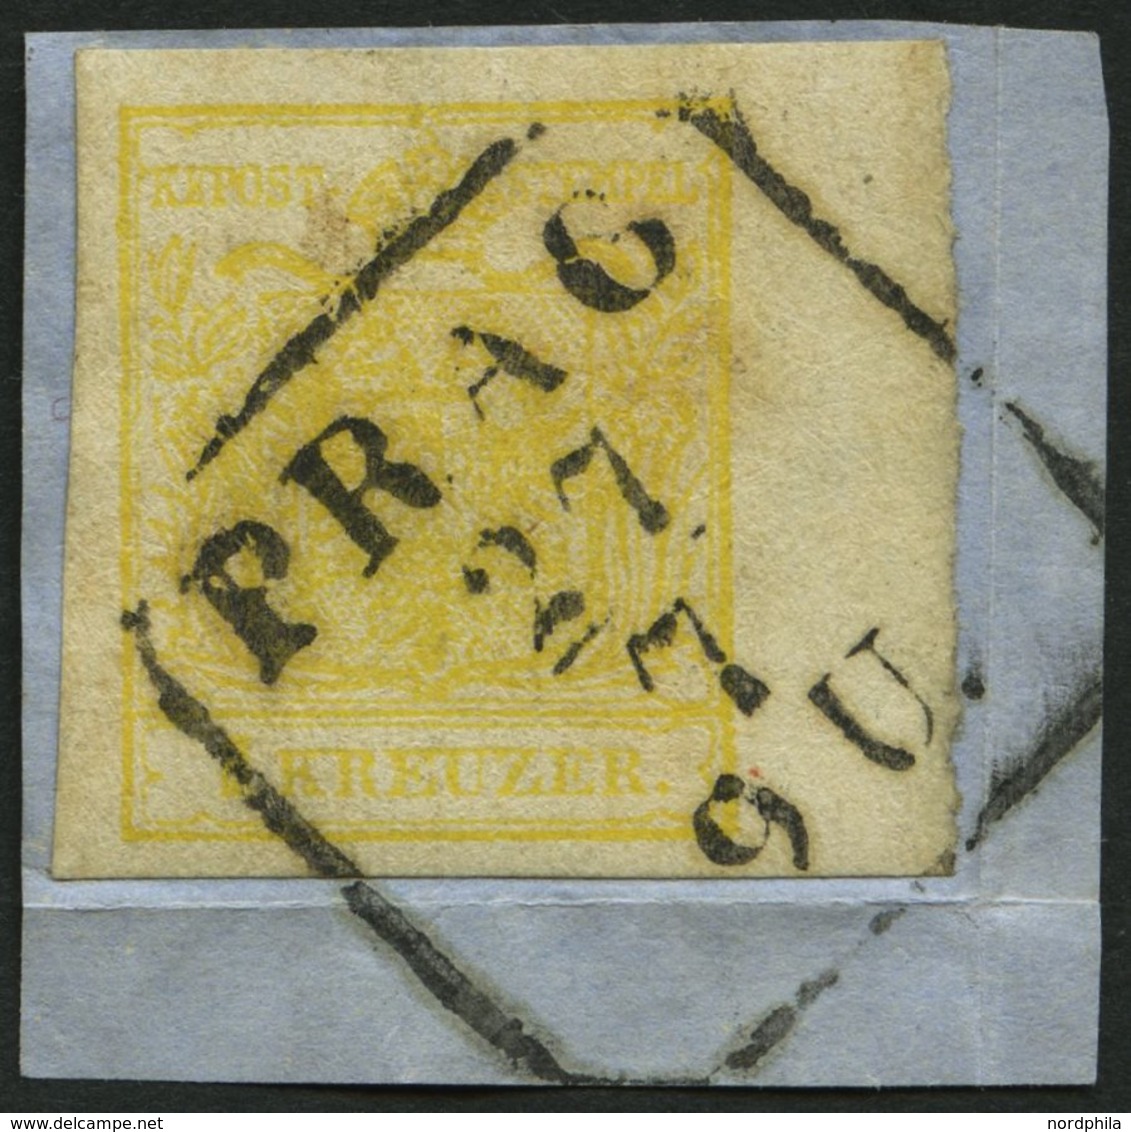 ÖSTERREICH 1Ya BrfStk, 1854, 1 Kr. Gelb, Maschinenpapier, Type Ib, Mit Rechtem Rand (6 Mm), R4 PRAG, Prachtbriefstück - Gebraucht